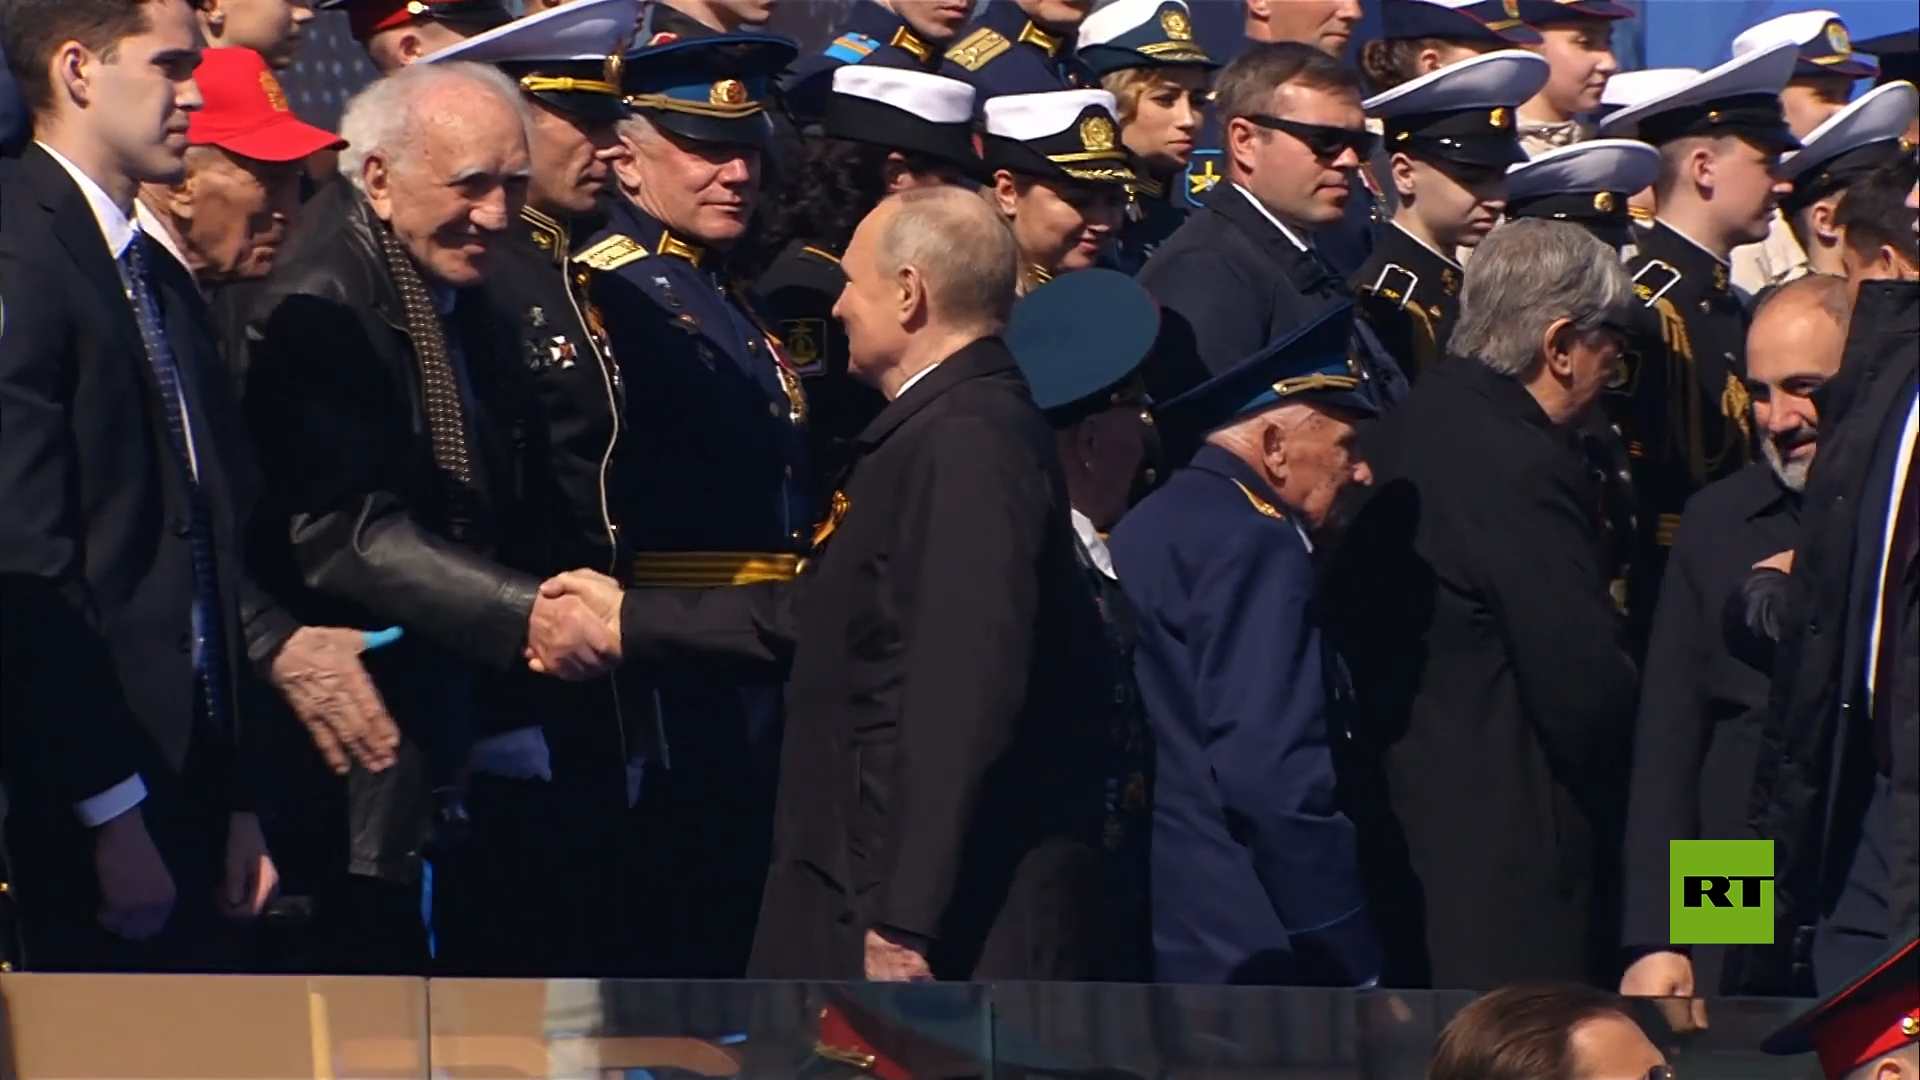 وصول بوتين إلى الساحة الحمراء لحضور العرض العسكري بمناسبة عيد النصر